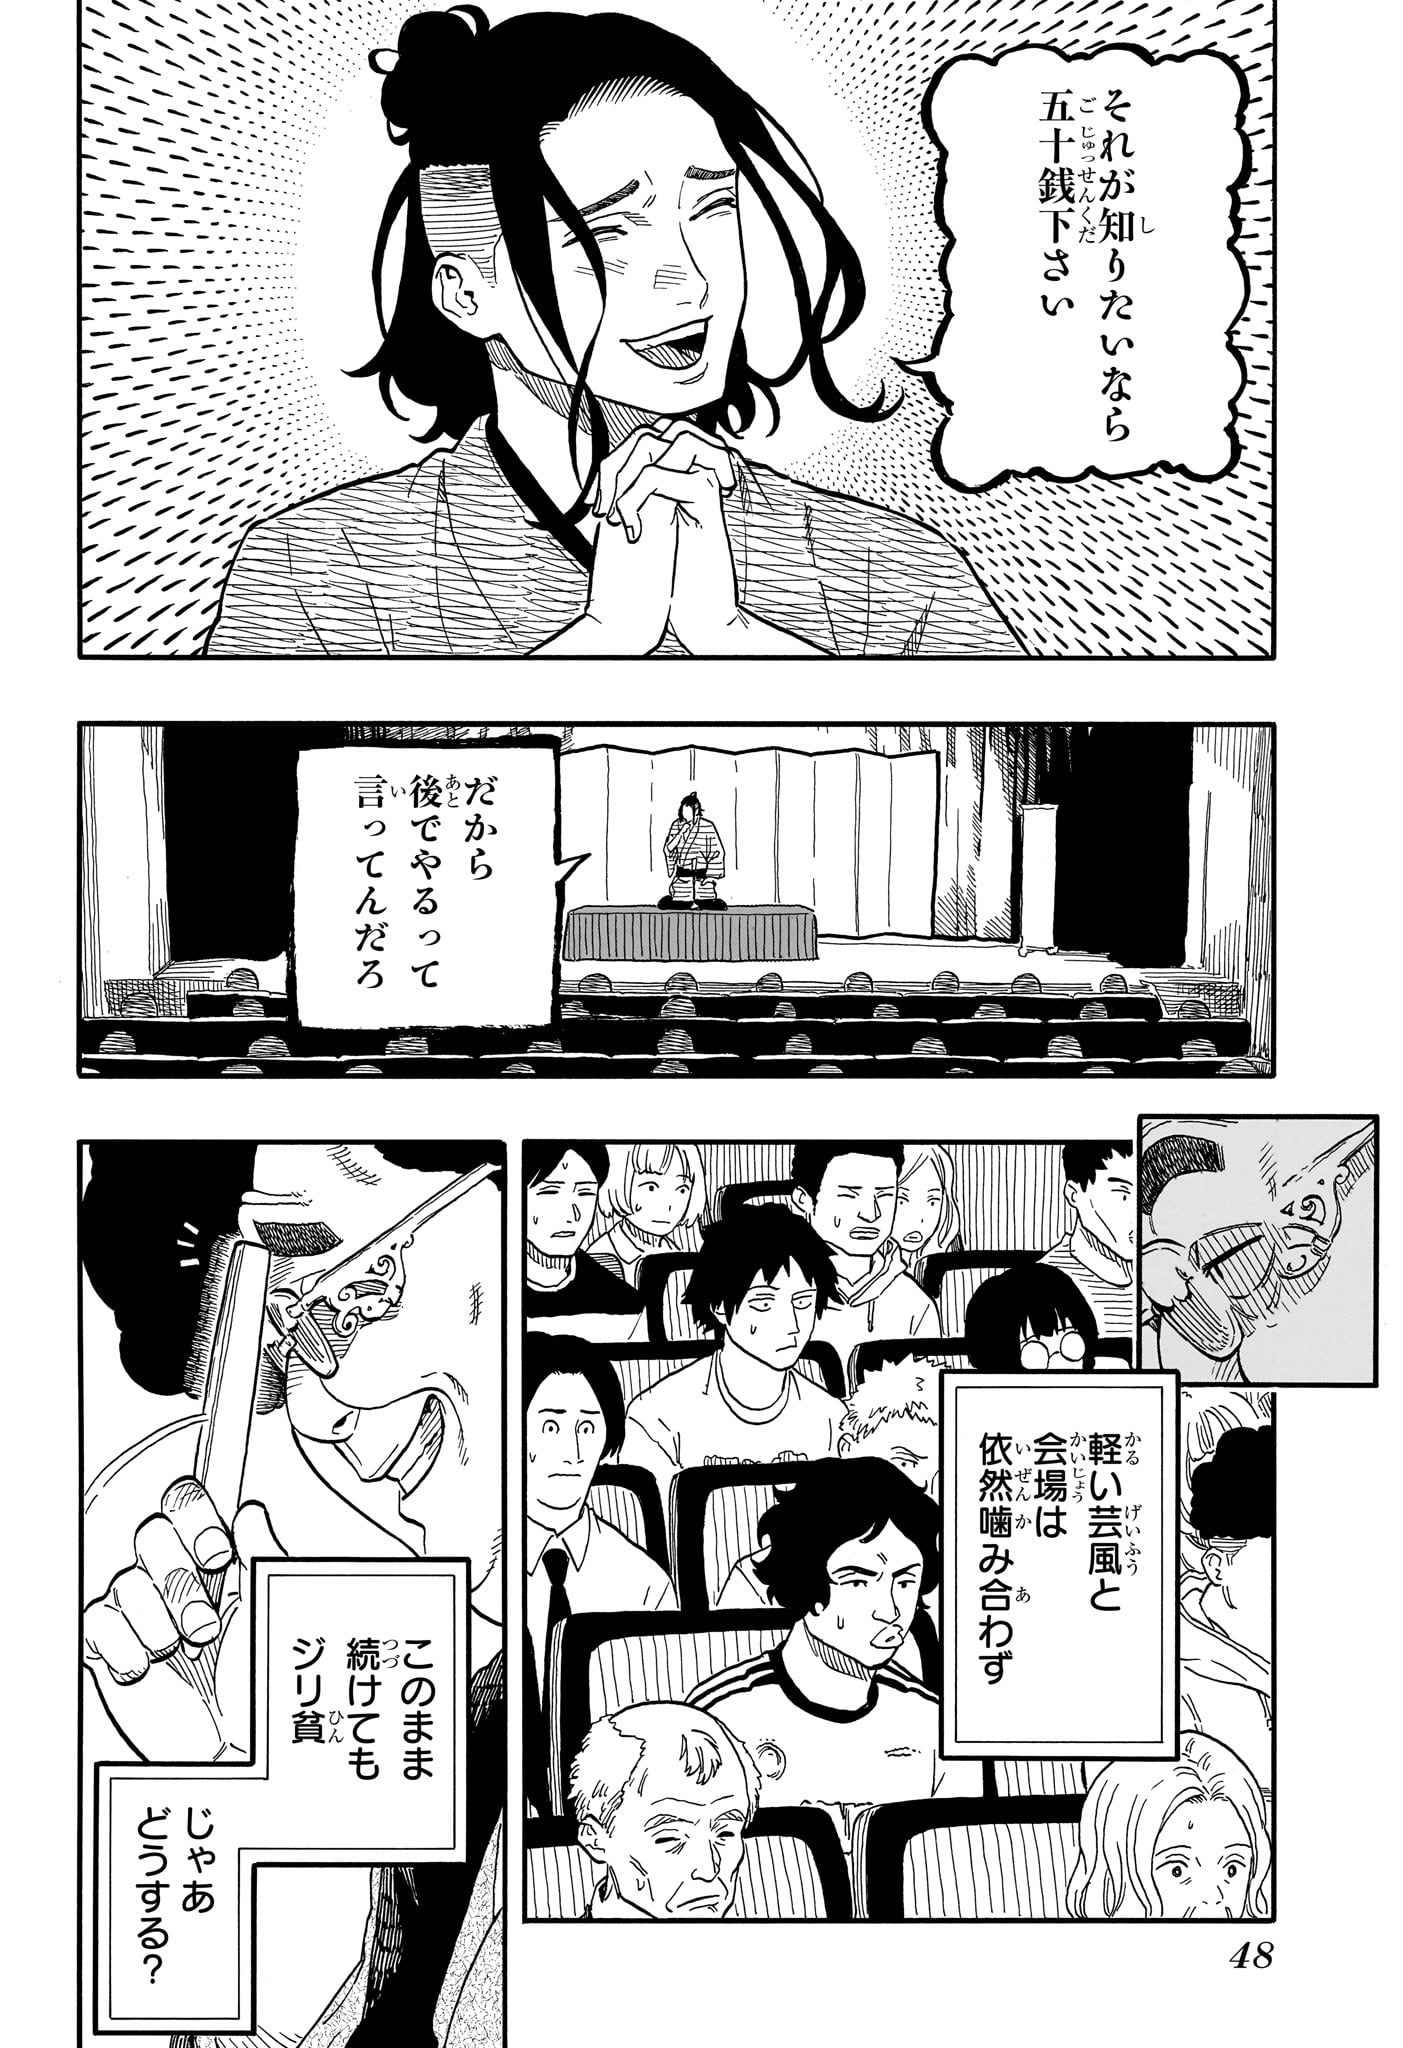 Akane-Banashi - Chapter 112 - Page 2